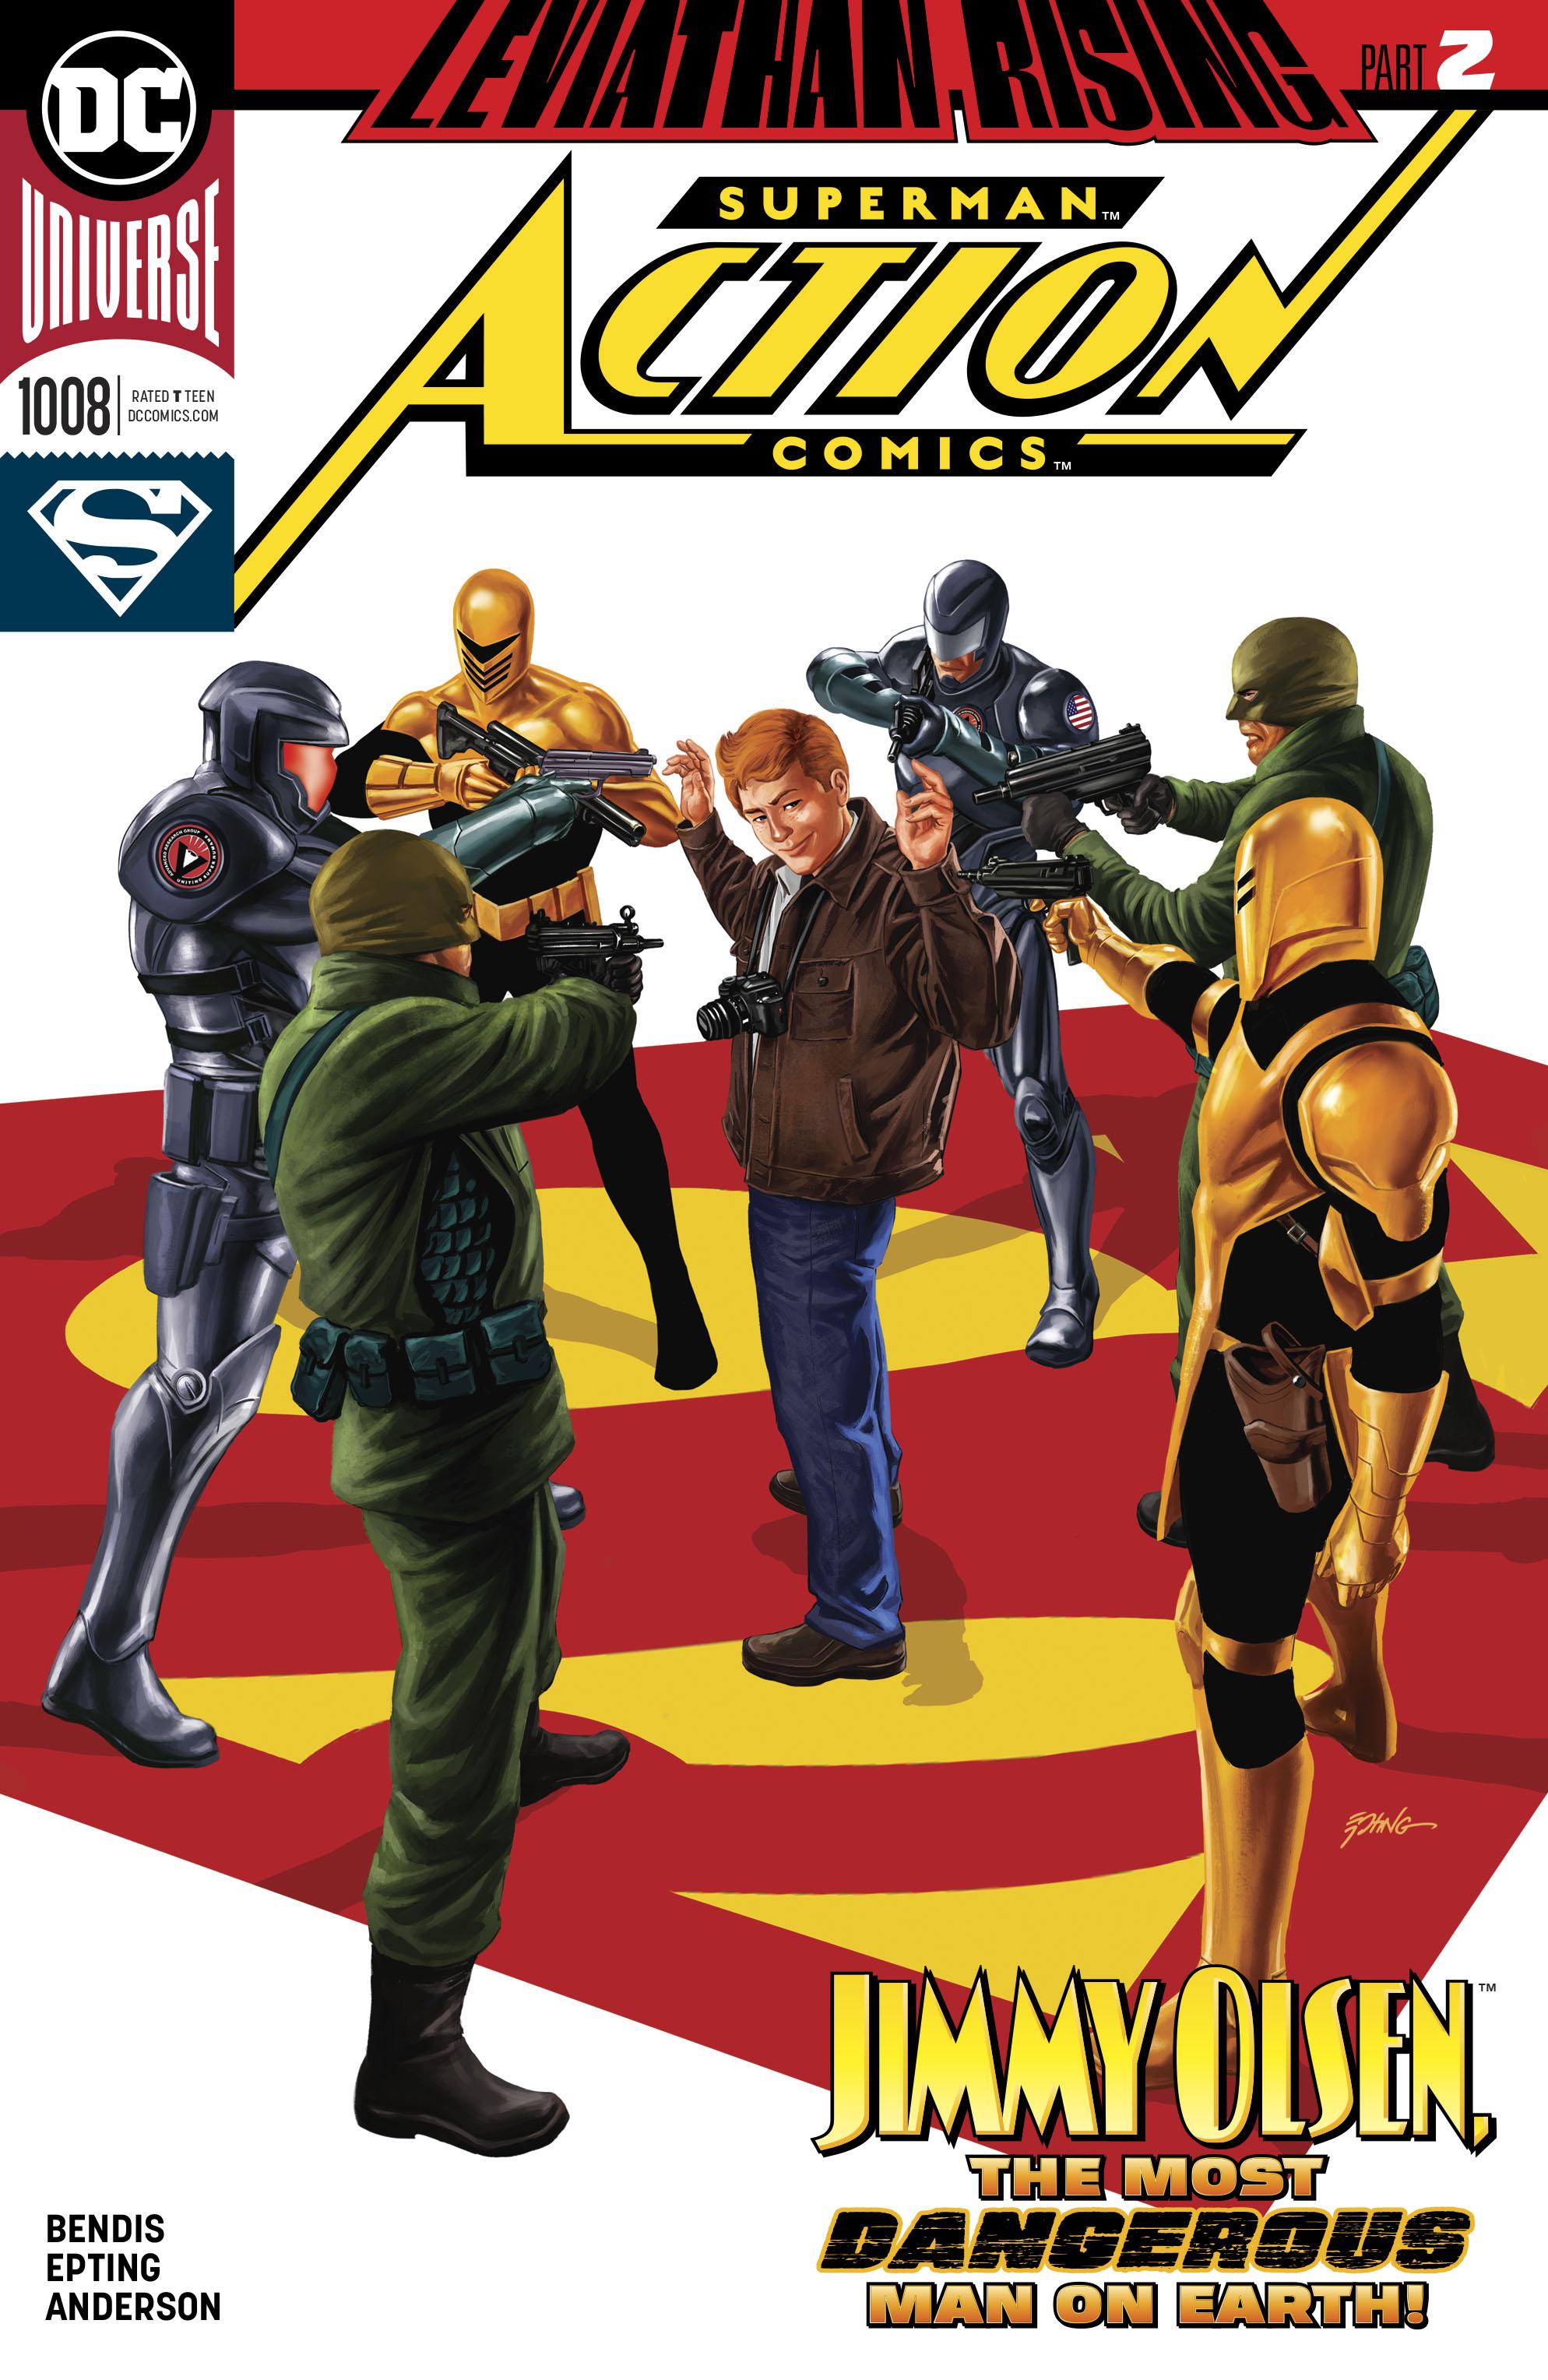 Action Comics Vol. 1 #1008